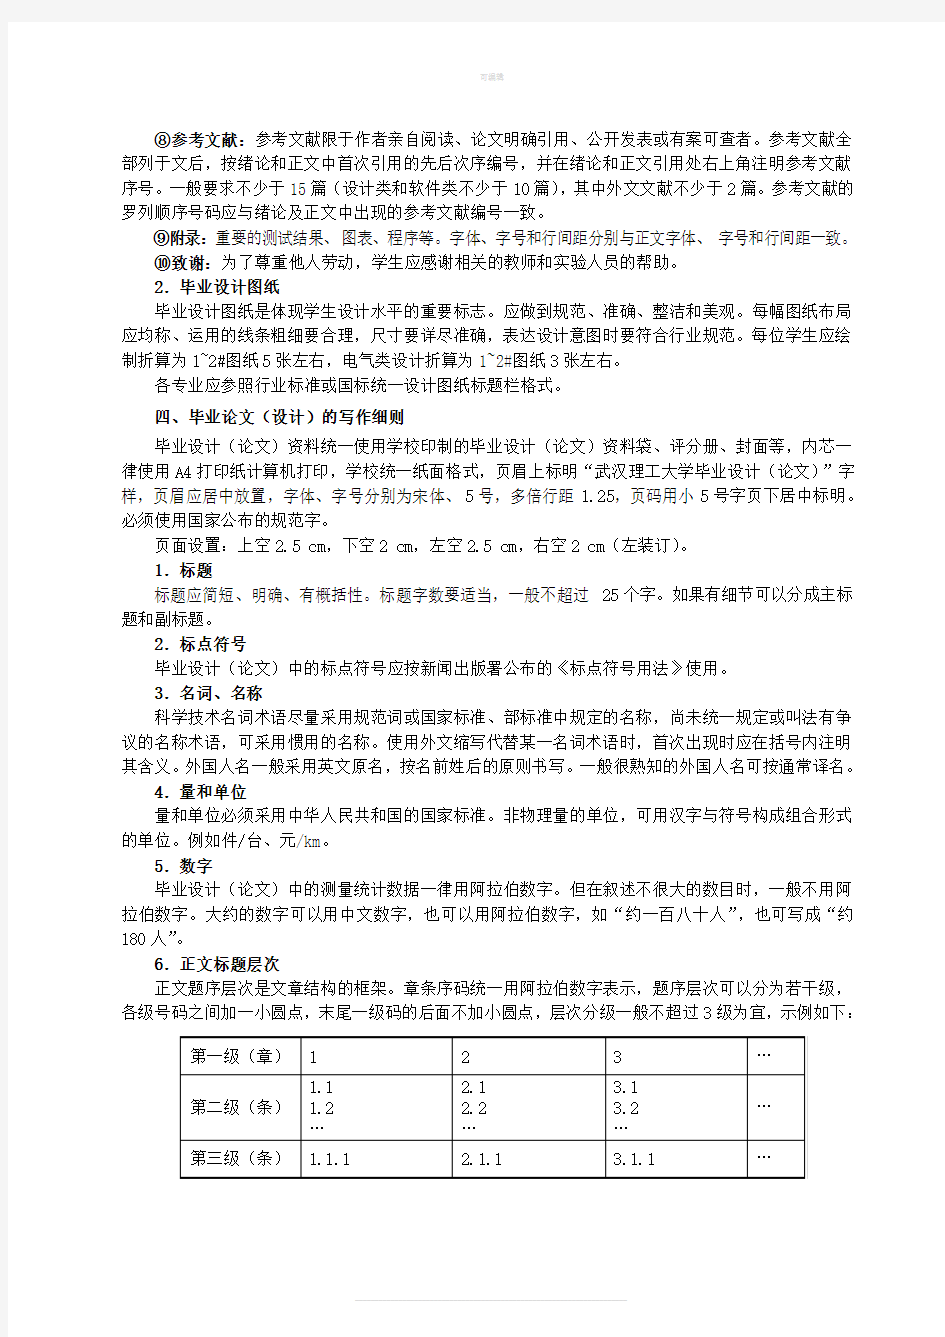 武汉理工大学本科生毕业设计(论文)要求及格式